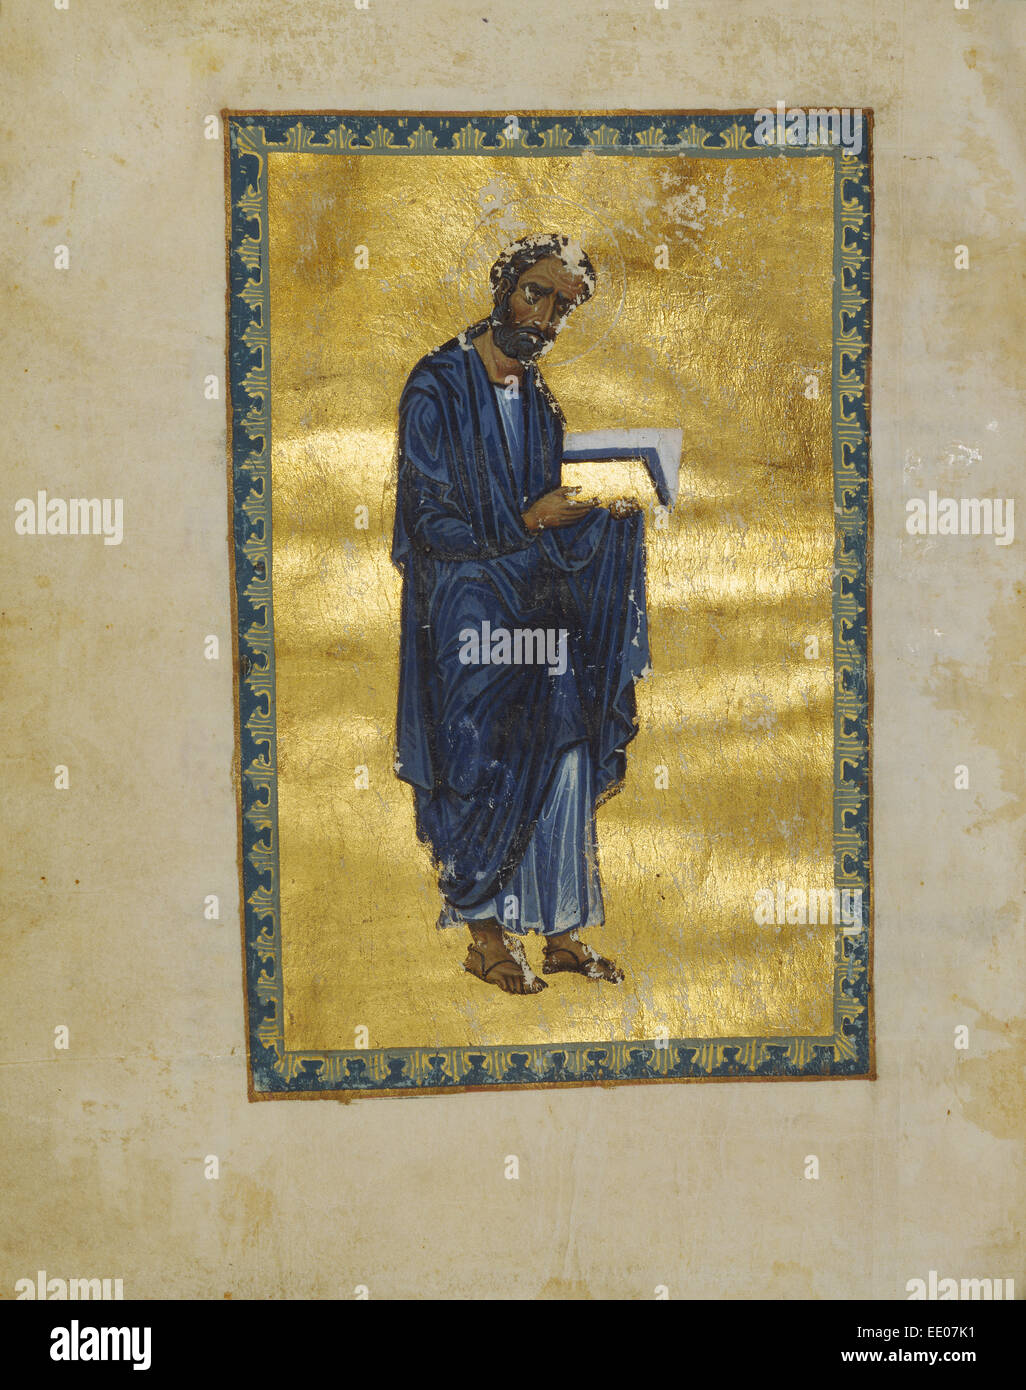 Saint Marc ; inconnu ; Constantinople, Turquie, Asie ; 1133 Tempera ; couleurs, feuille d'or, d'or, peinture et encre sur parchemin Banque D'Images